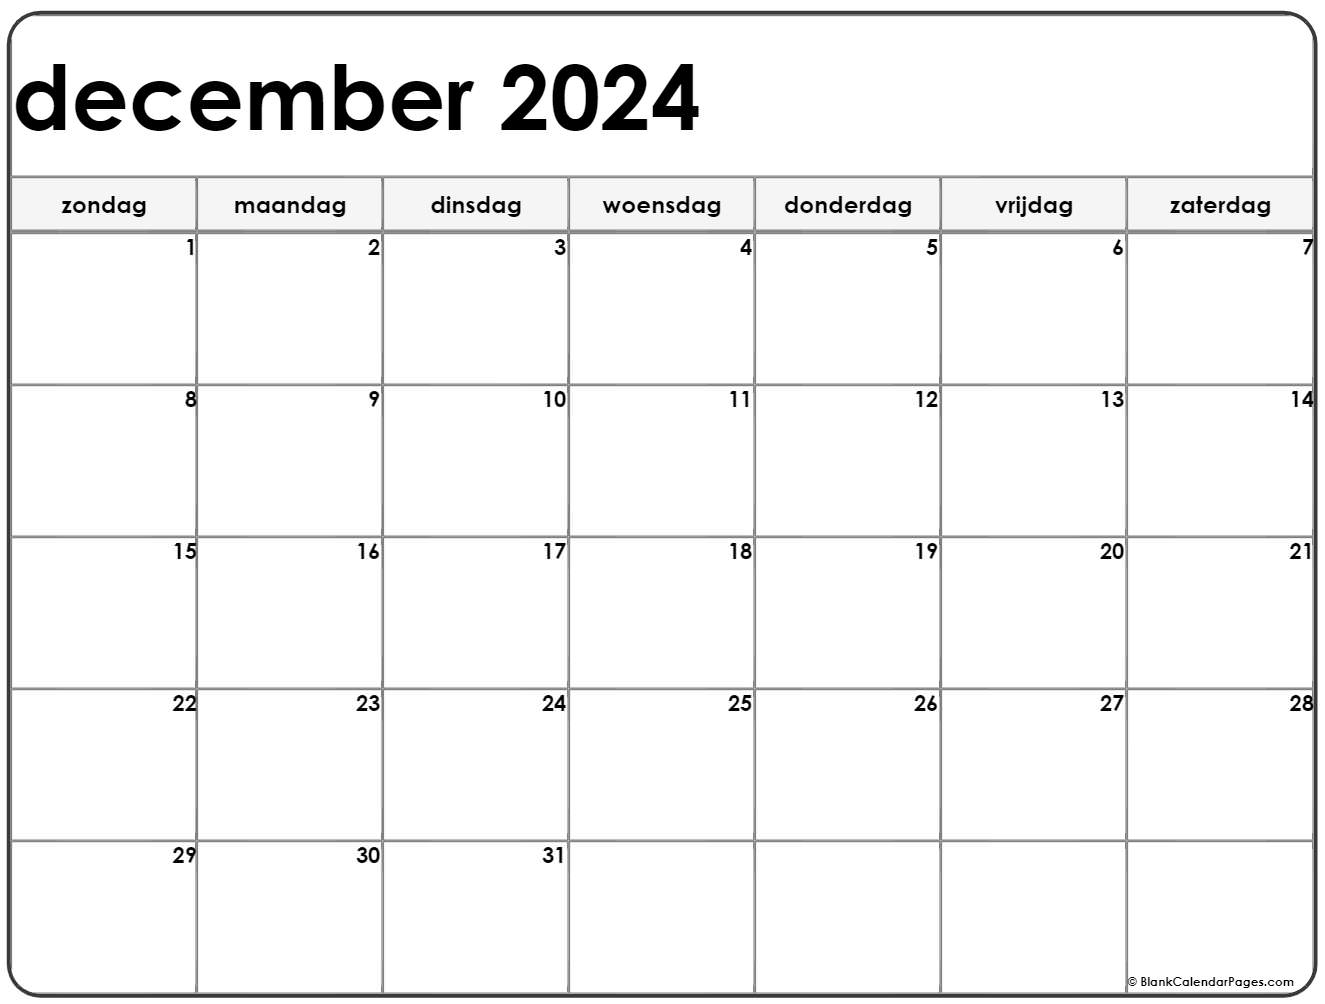 Drama Zeggen hebzuchtig december 2021 kalender Nederlandse | Kalender december